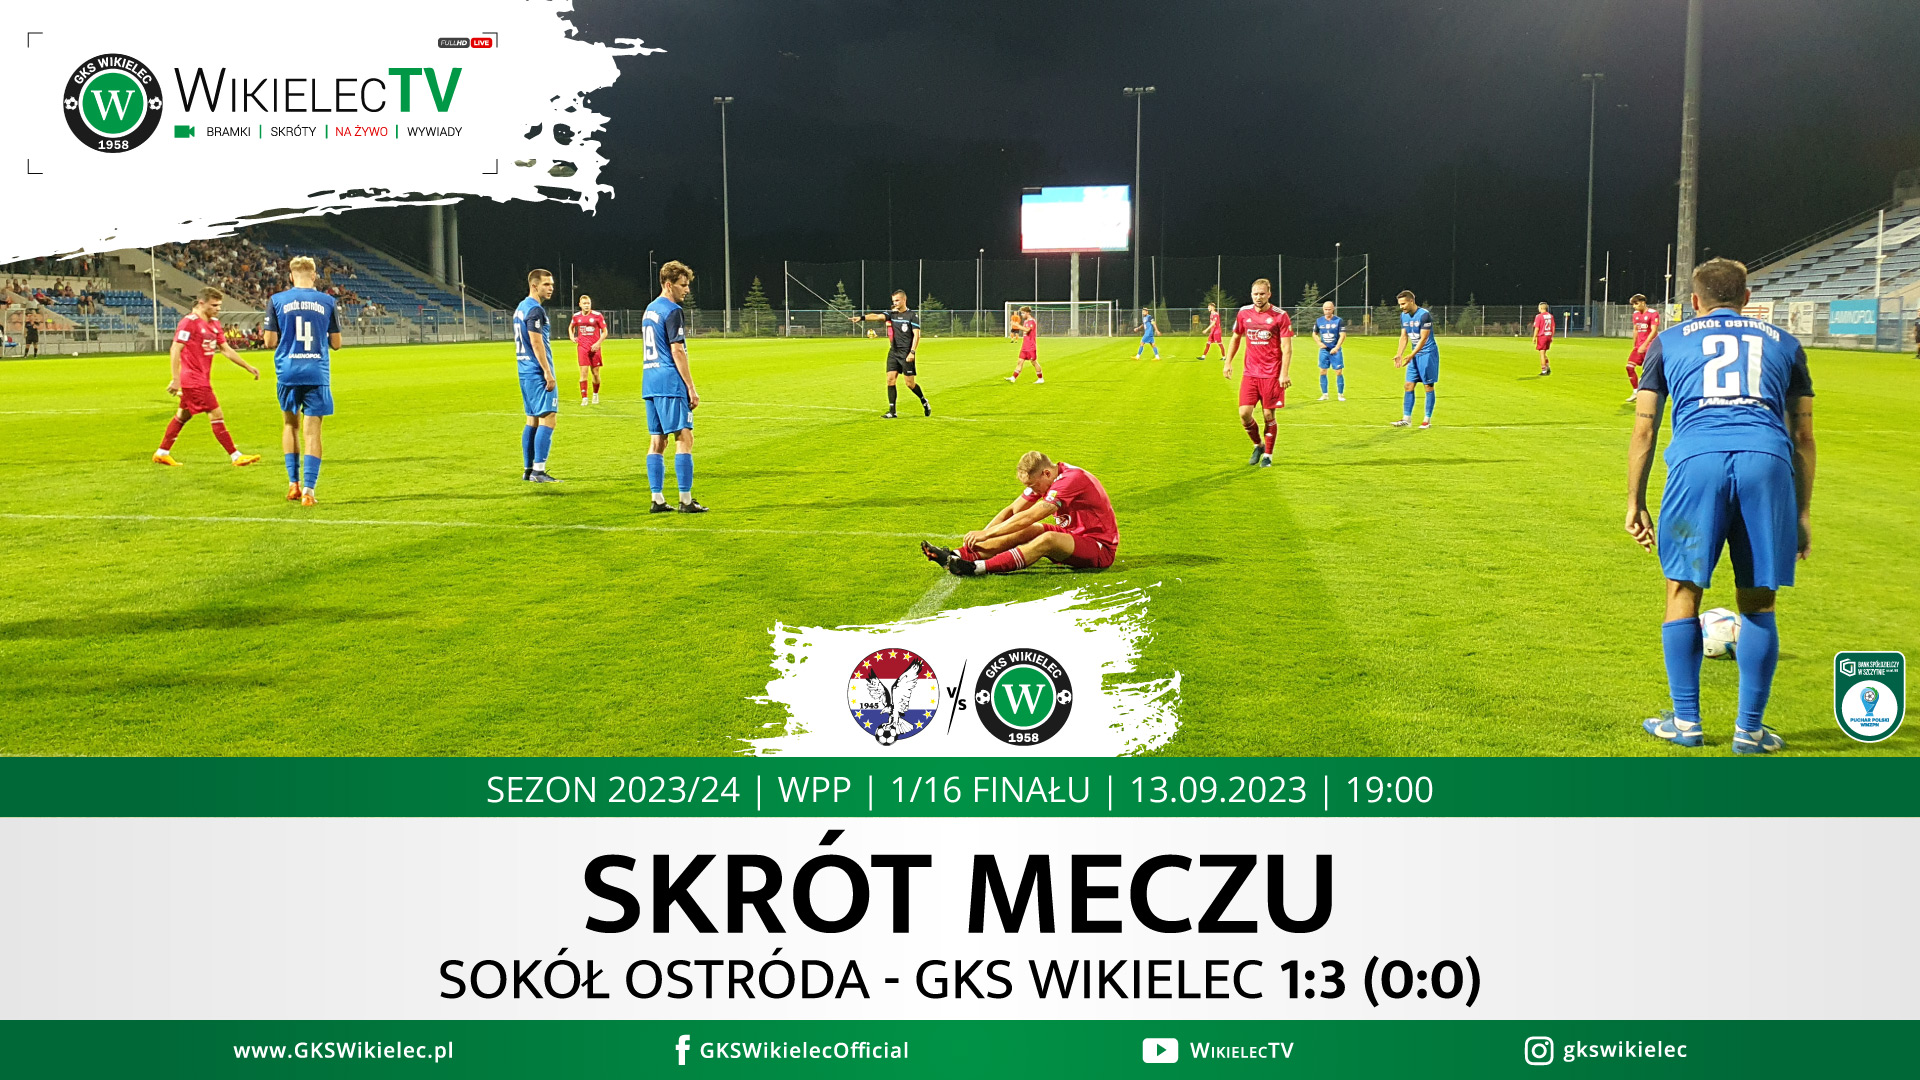 WikielecTV: Skrót meczu Sokół Ostróda - GKS Wikielec 1:3 (0:0)